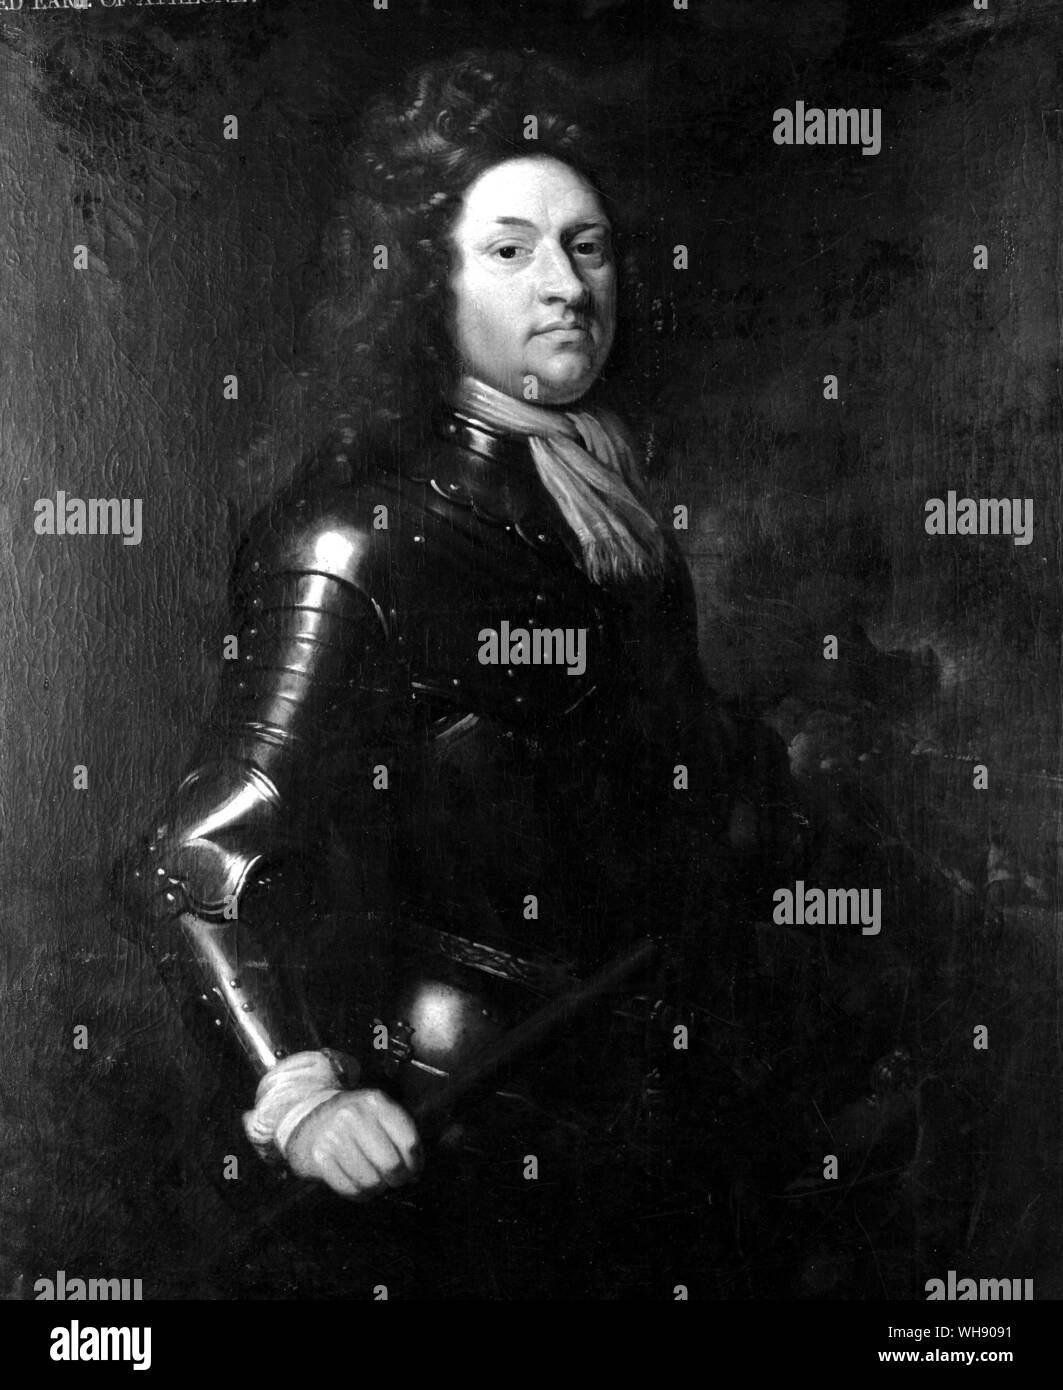 Godart, Il Barone van Reede-Ginckel, Conte di Athlone (1644-1703) fino a Marlborough dell'arrivo, la recitazione comandante dell'esercito alleato, che aveva quasi stato catturato e distrutto dai francesi sotto Boufflers. Dipinto di Sir Godfrey Kneller Foto Stock